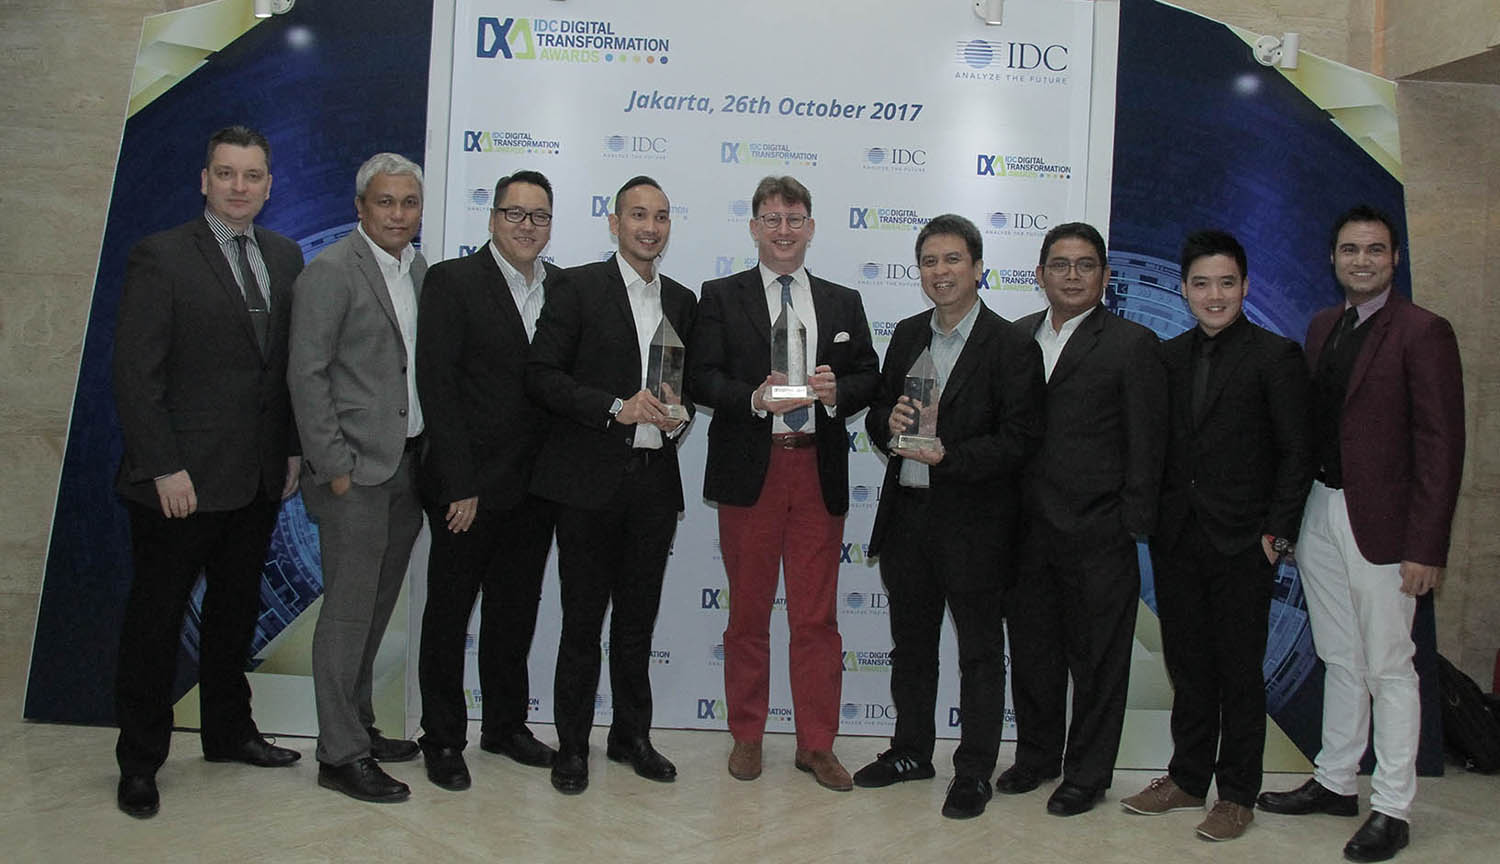 IDC recognises significant Indonesian market disruptors